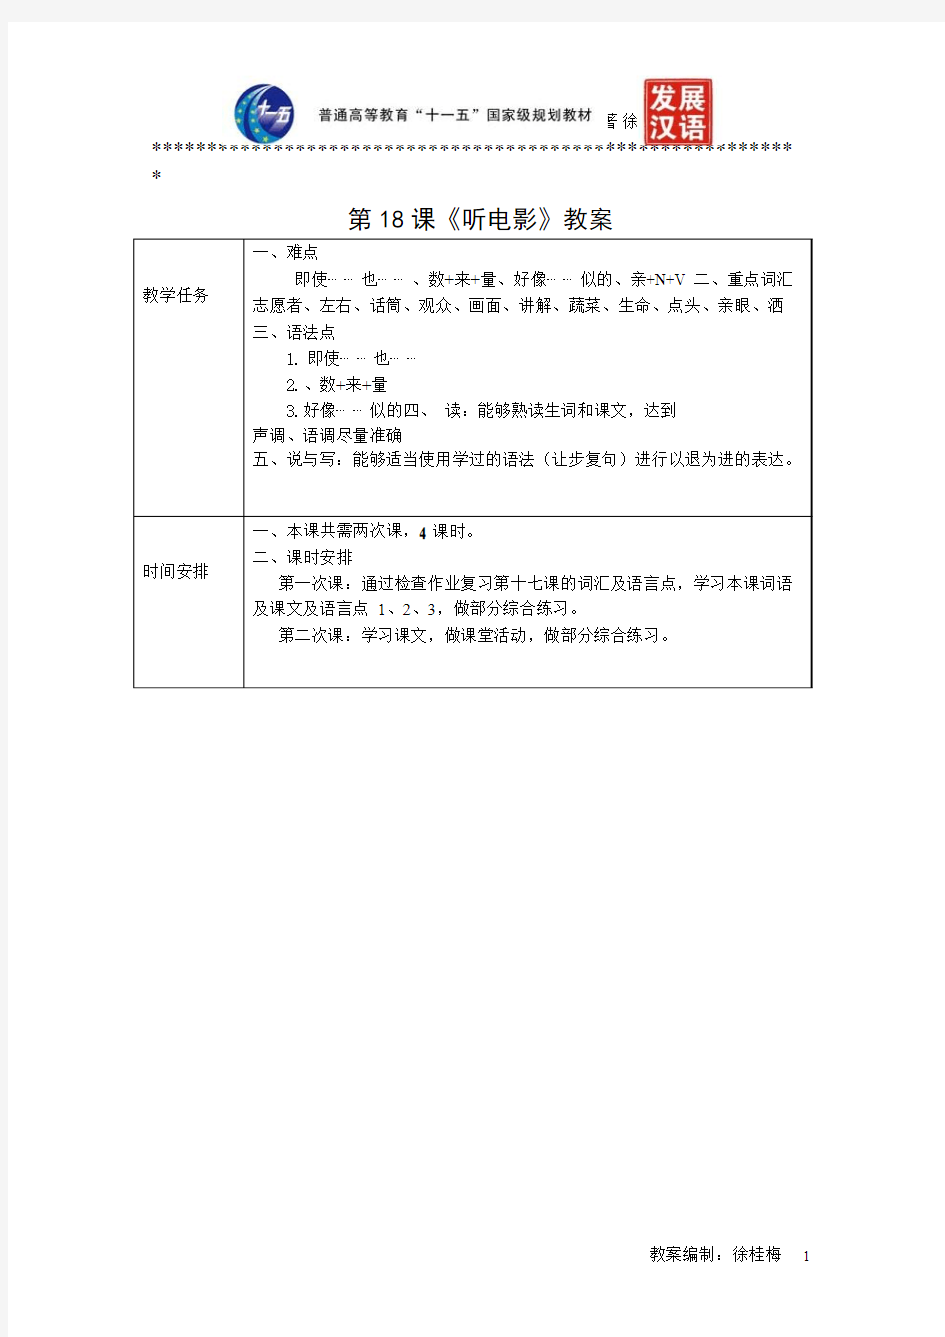 《发展汉语(第二版)综合初级Ⅱ》教案第18课《听电影》